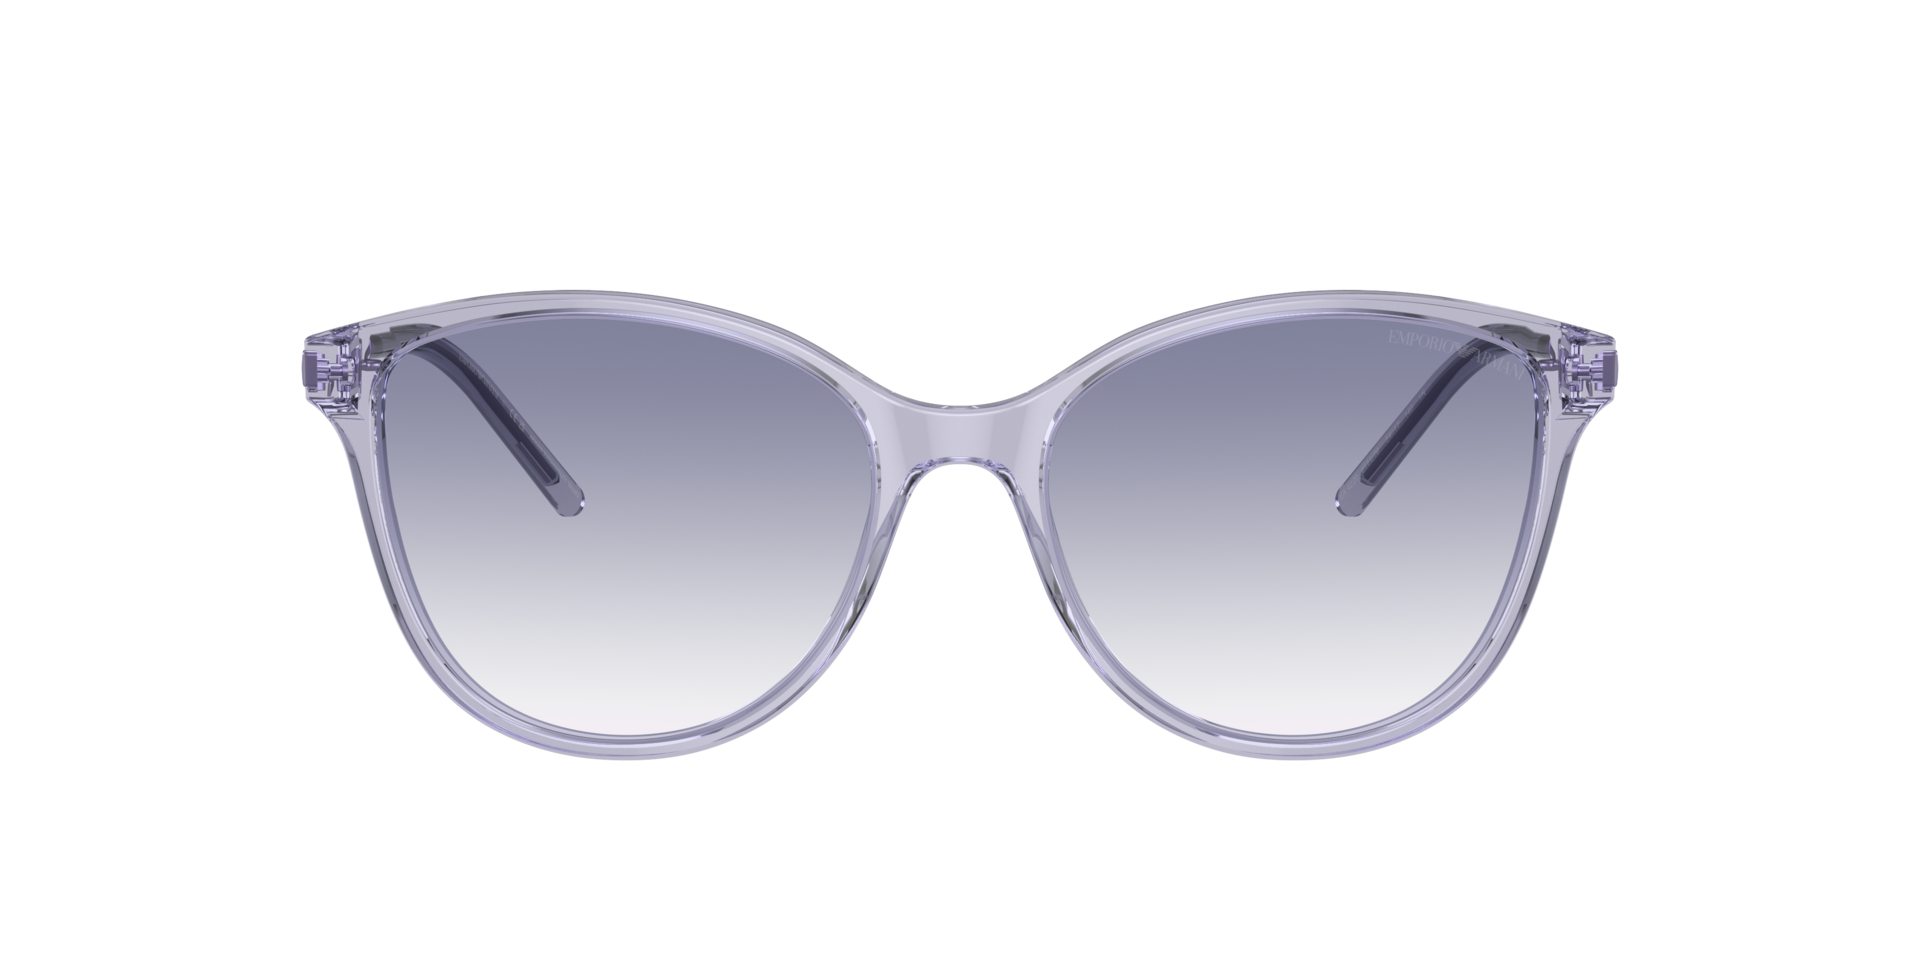 Das Bild zeigt die Sonnenbrille EA4220 611179 von der Marke Emporio Armani in flieder.